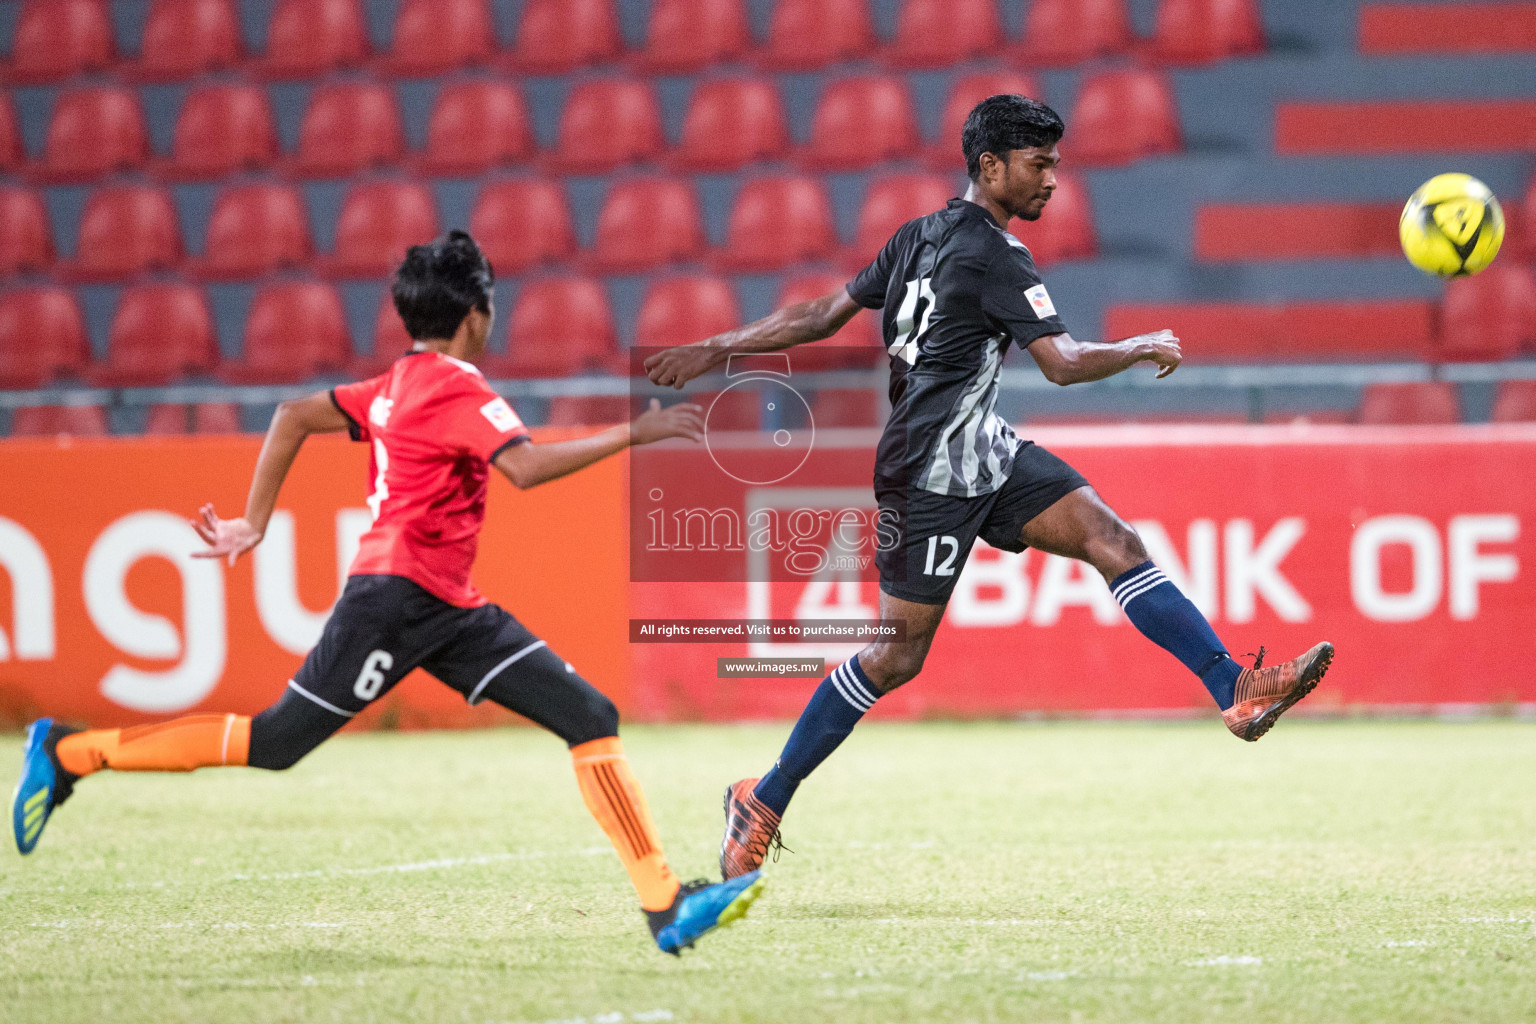 Ahmadhiyya School vs Ghaazee School in MAMEN Inter School Football Tournament 2019 (U18) in Male, Maldives on 28th March 2019, Photos: Suadh Abdul Sattar / images.mv